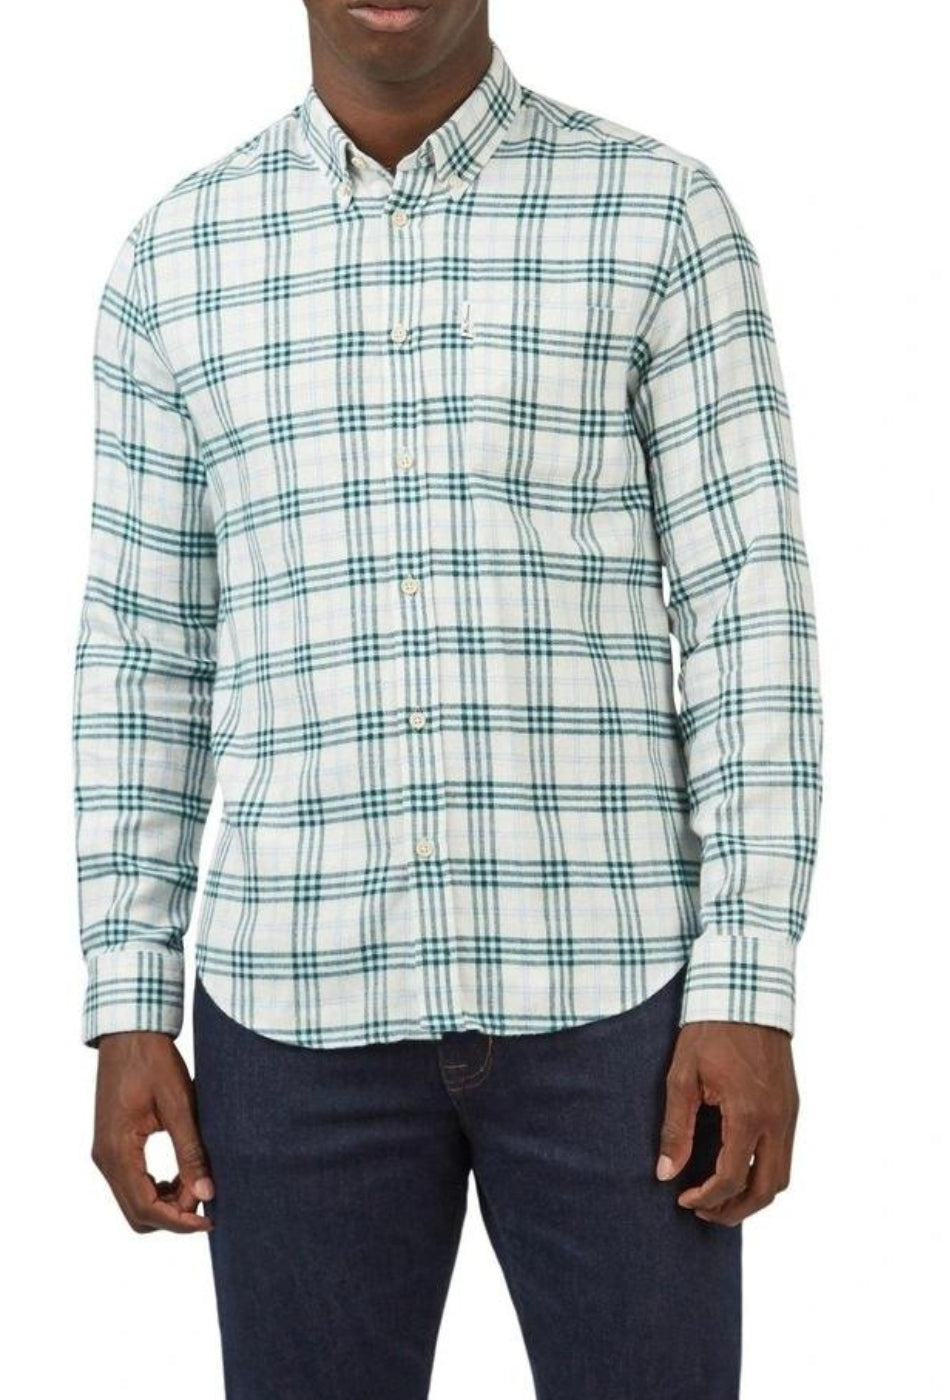 Herringbone Check L/S Shirt - Ocean Green-BEN SHERMAN-P&K The General Store